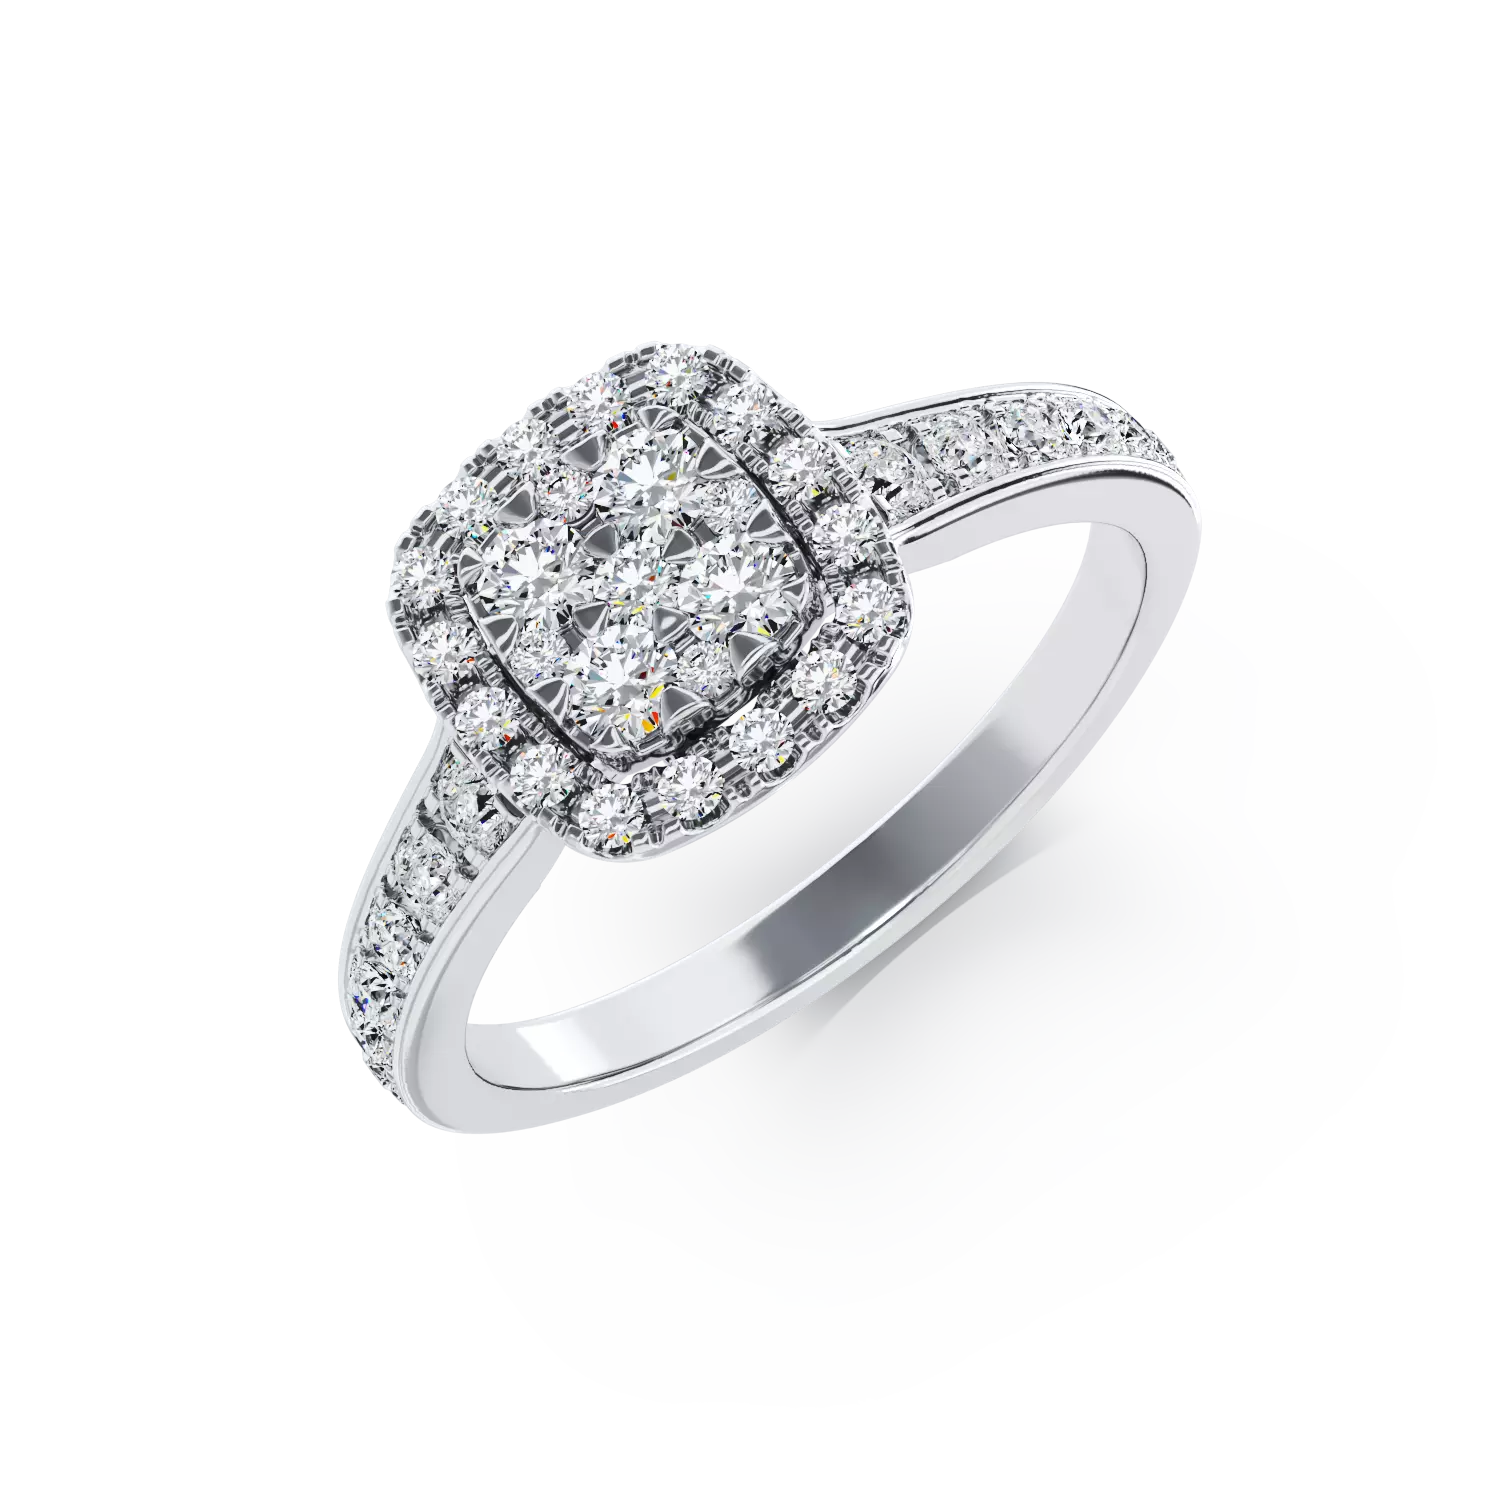 18K fehérarany eljegyzési gyűrű 0.52 karátos gyémántokkal